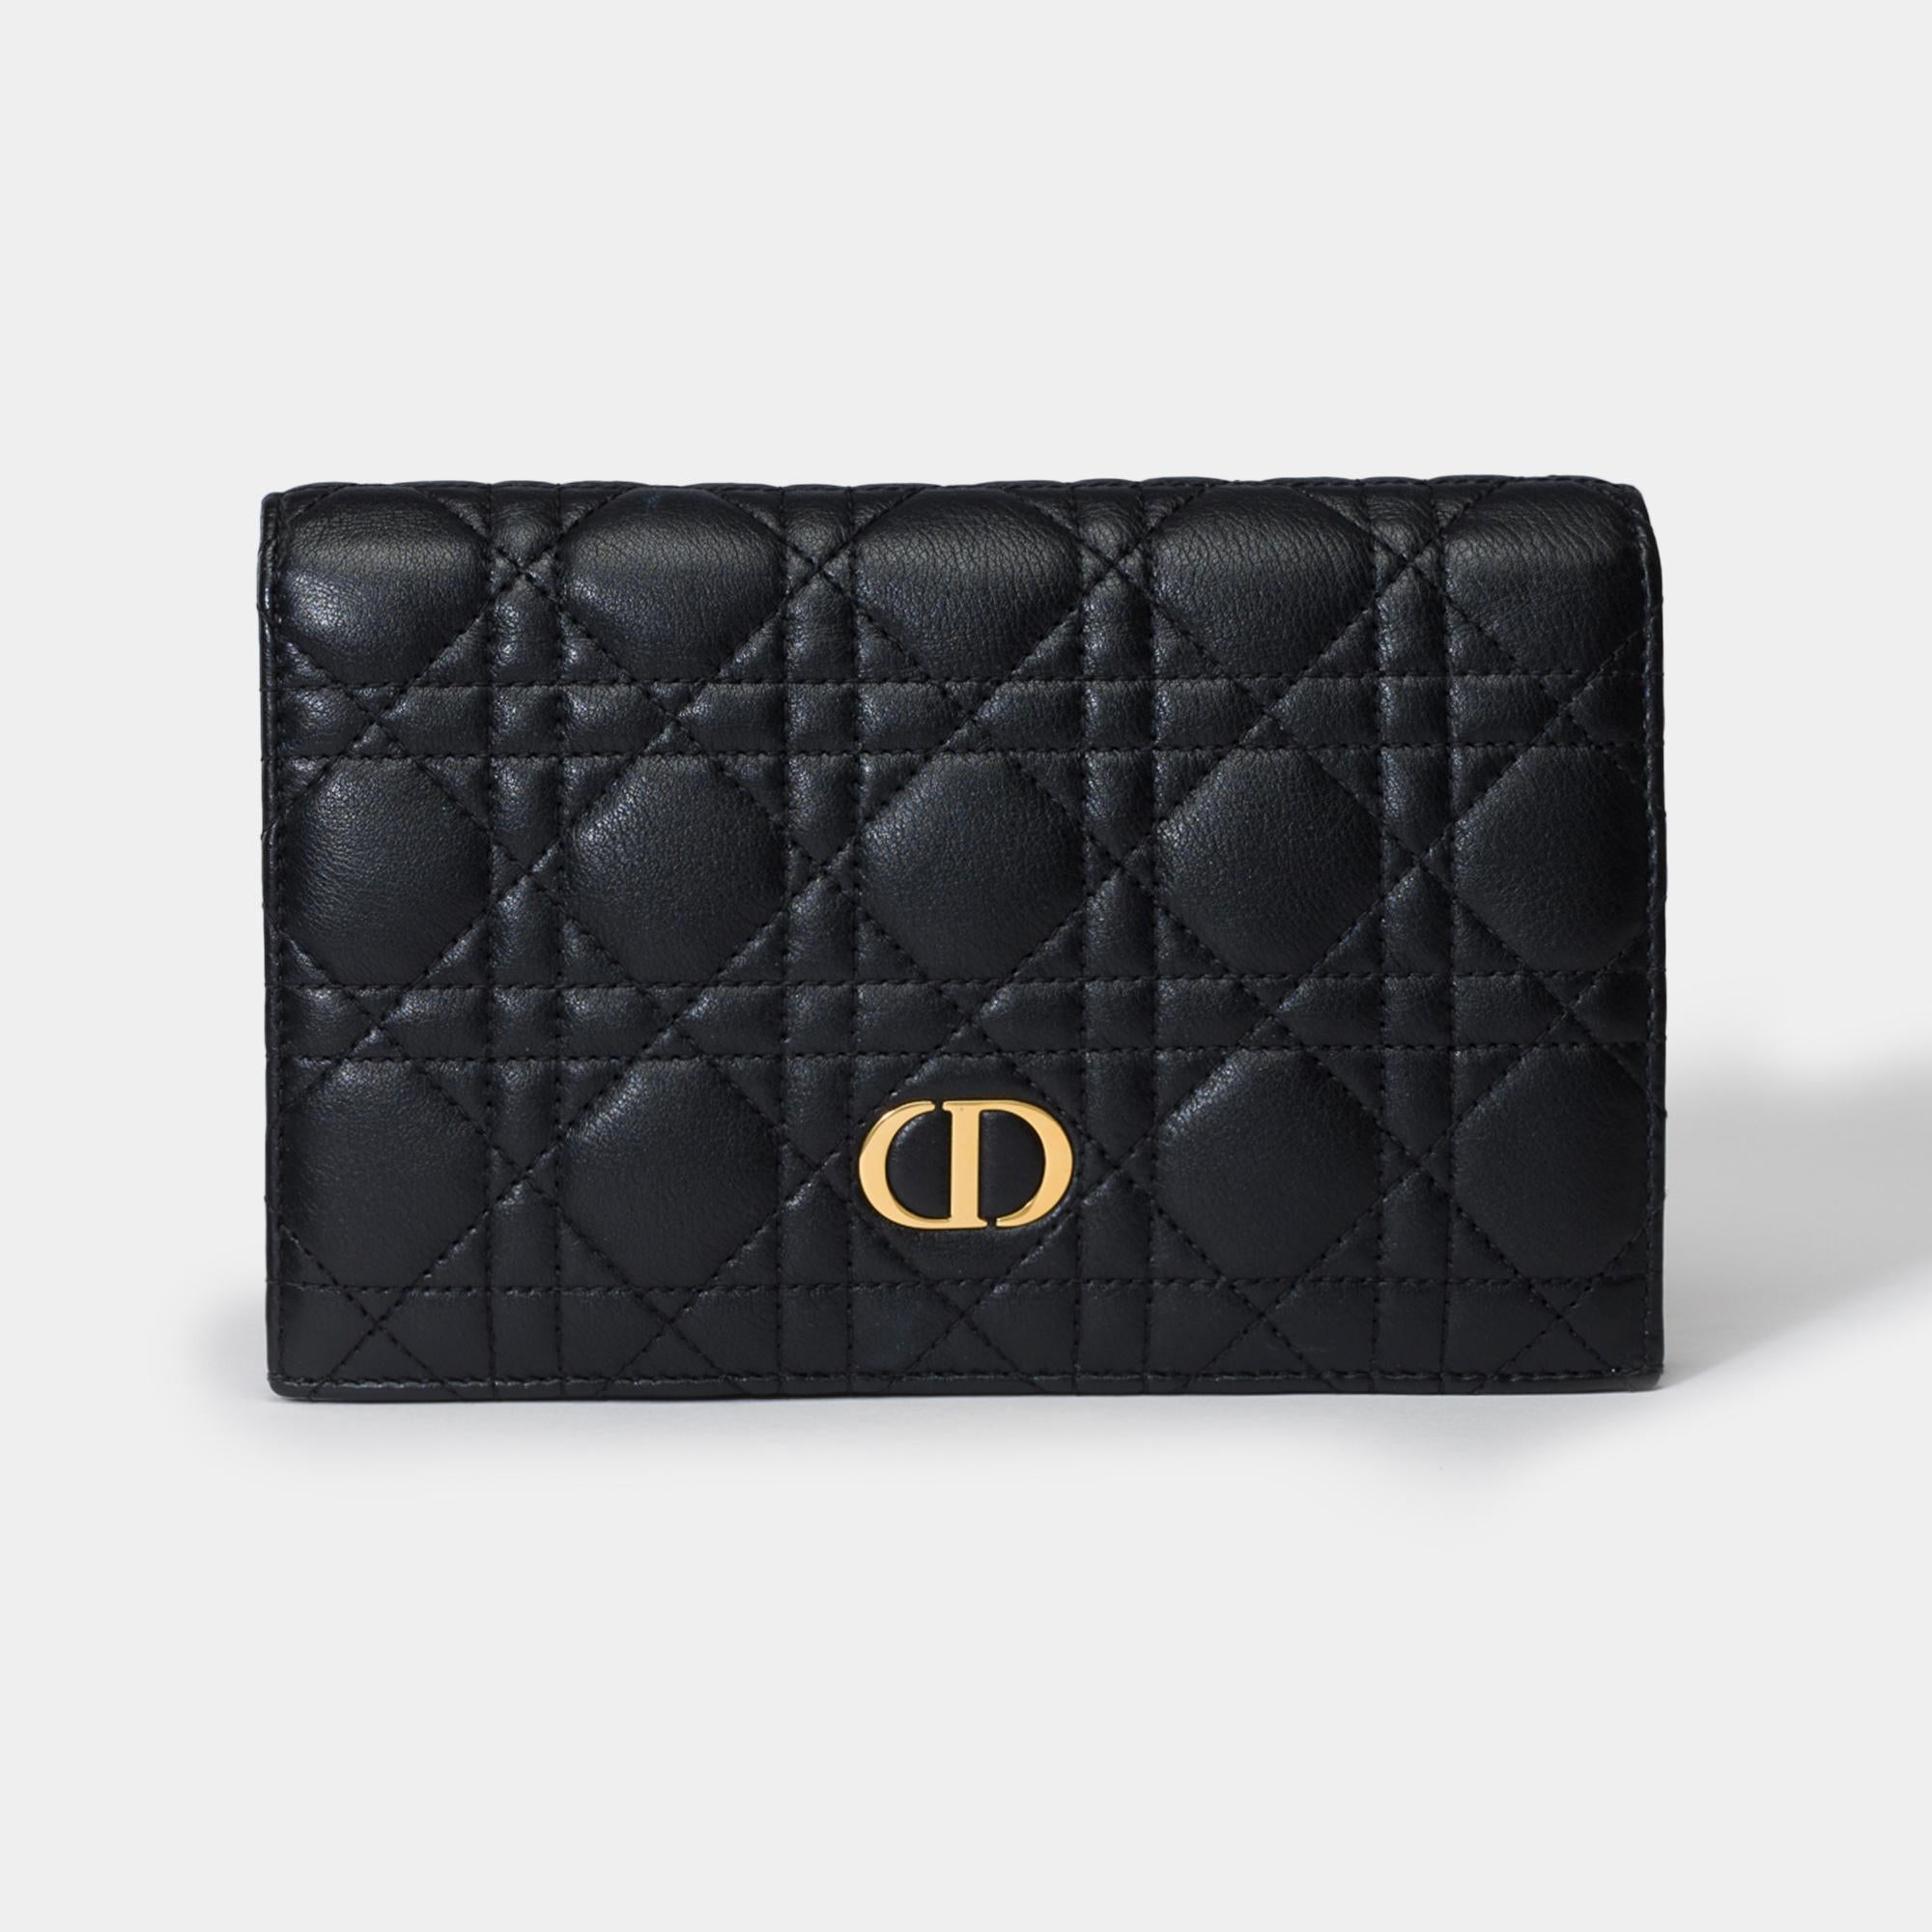 Le portefeuille long Dior Caro offre une version contemporaine de l'emblématique couture Cannage. Confectionné en cuir de veau noir, il est doté d'un rabat rehaussé d'une signature CD sur le devant. Compagnon chic et spacieux, ce portefeuille peut